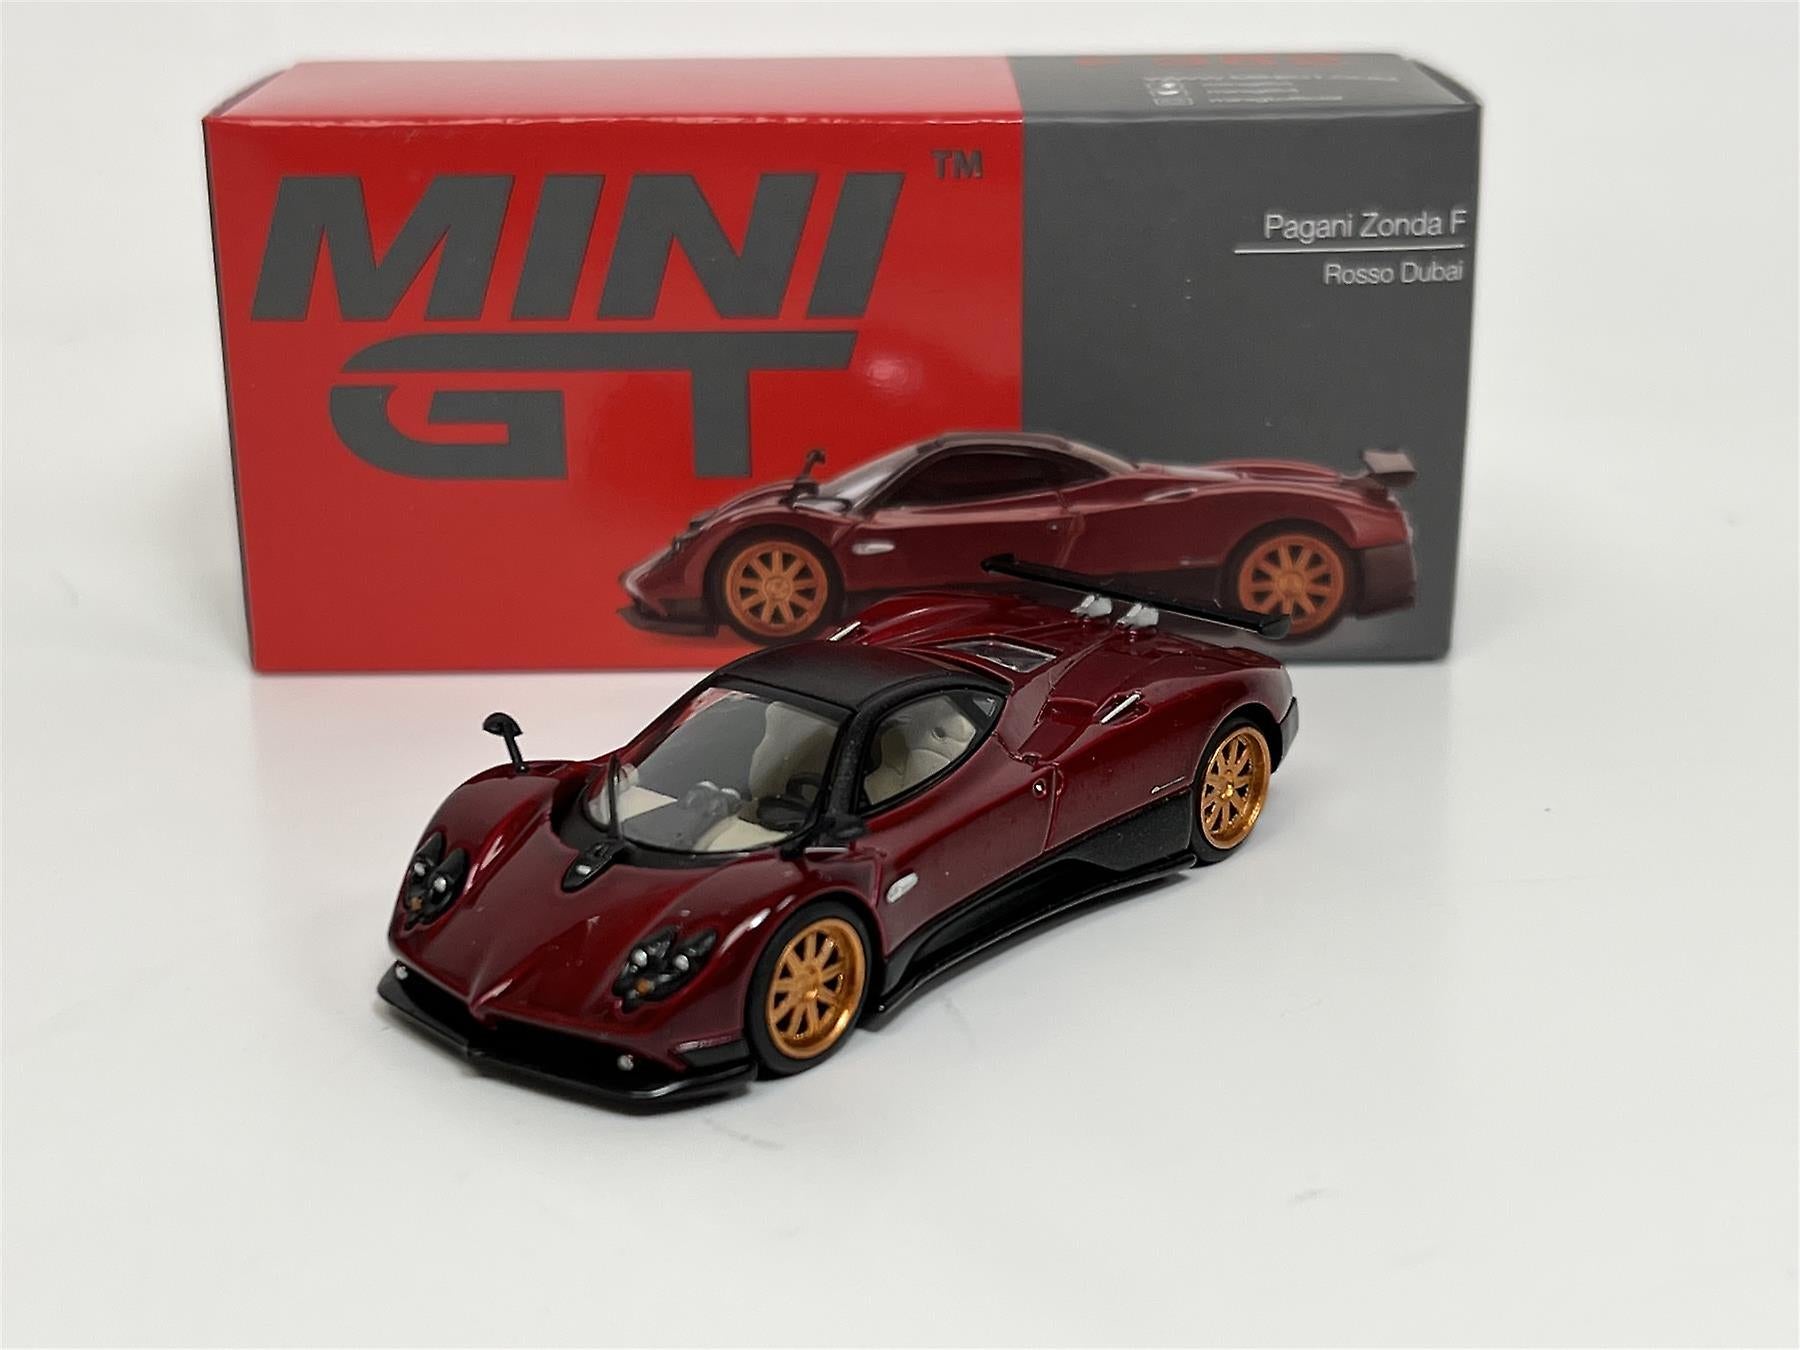 Mini GT Pagani Zonda F Rosso Dubai 1:64 Die Cast